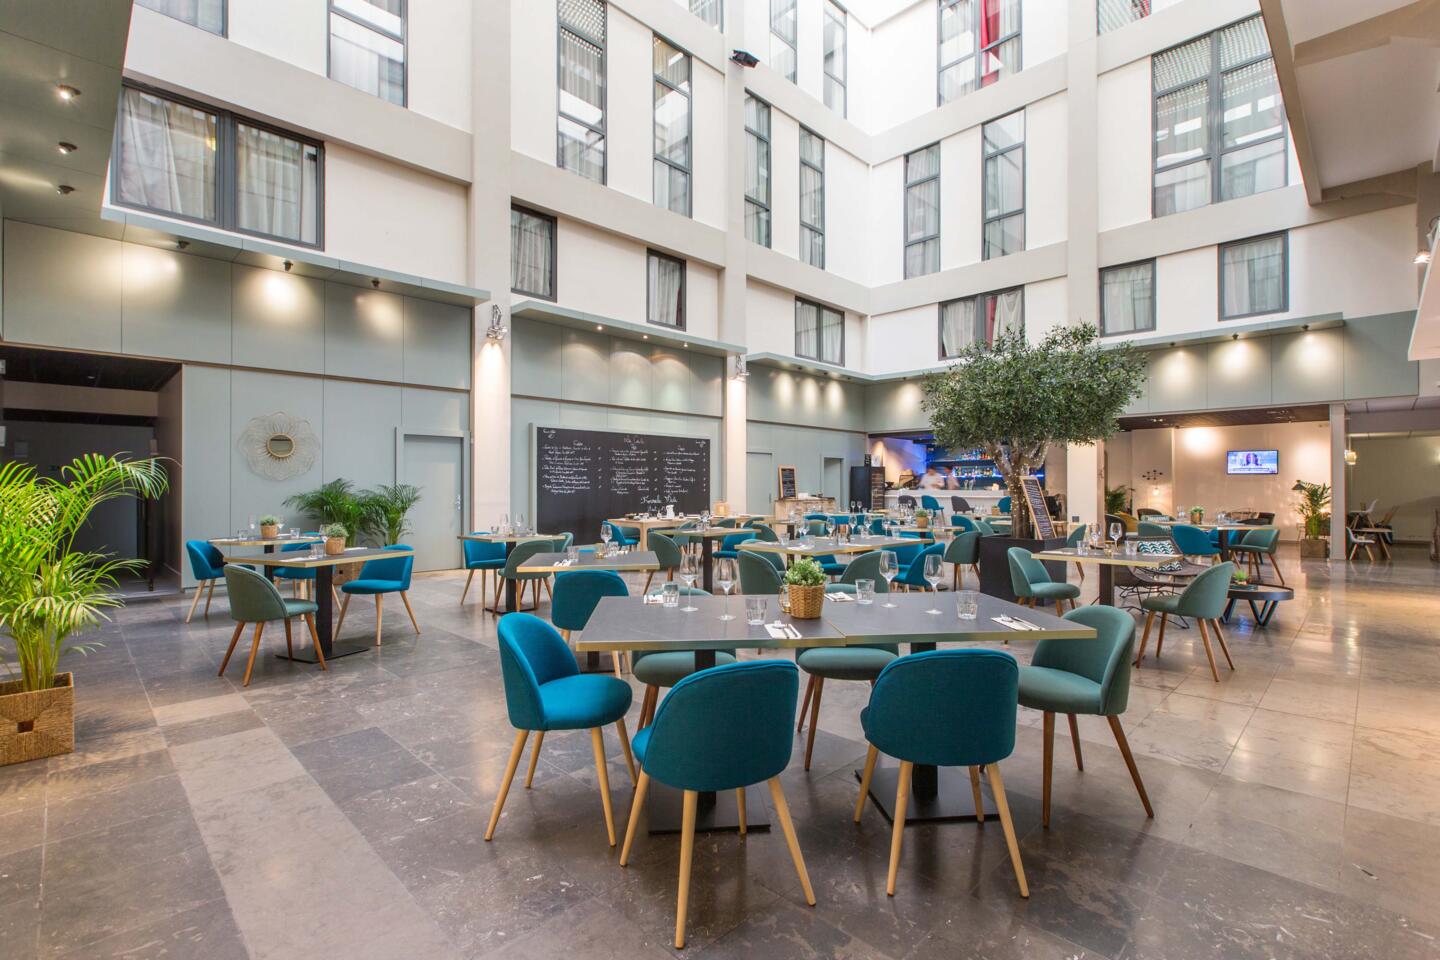 Innenansicht des Restaurants Bistrot City Lyon Part-Dieu, moderne Dekoration mit entenblauen Stoffstühlen, Holztischen und grünen Pflanzen, helle und einladende Atmosphäre.